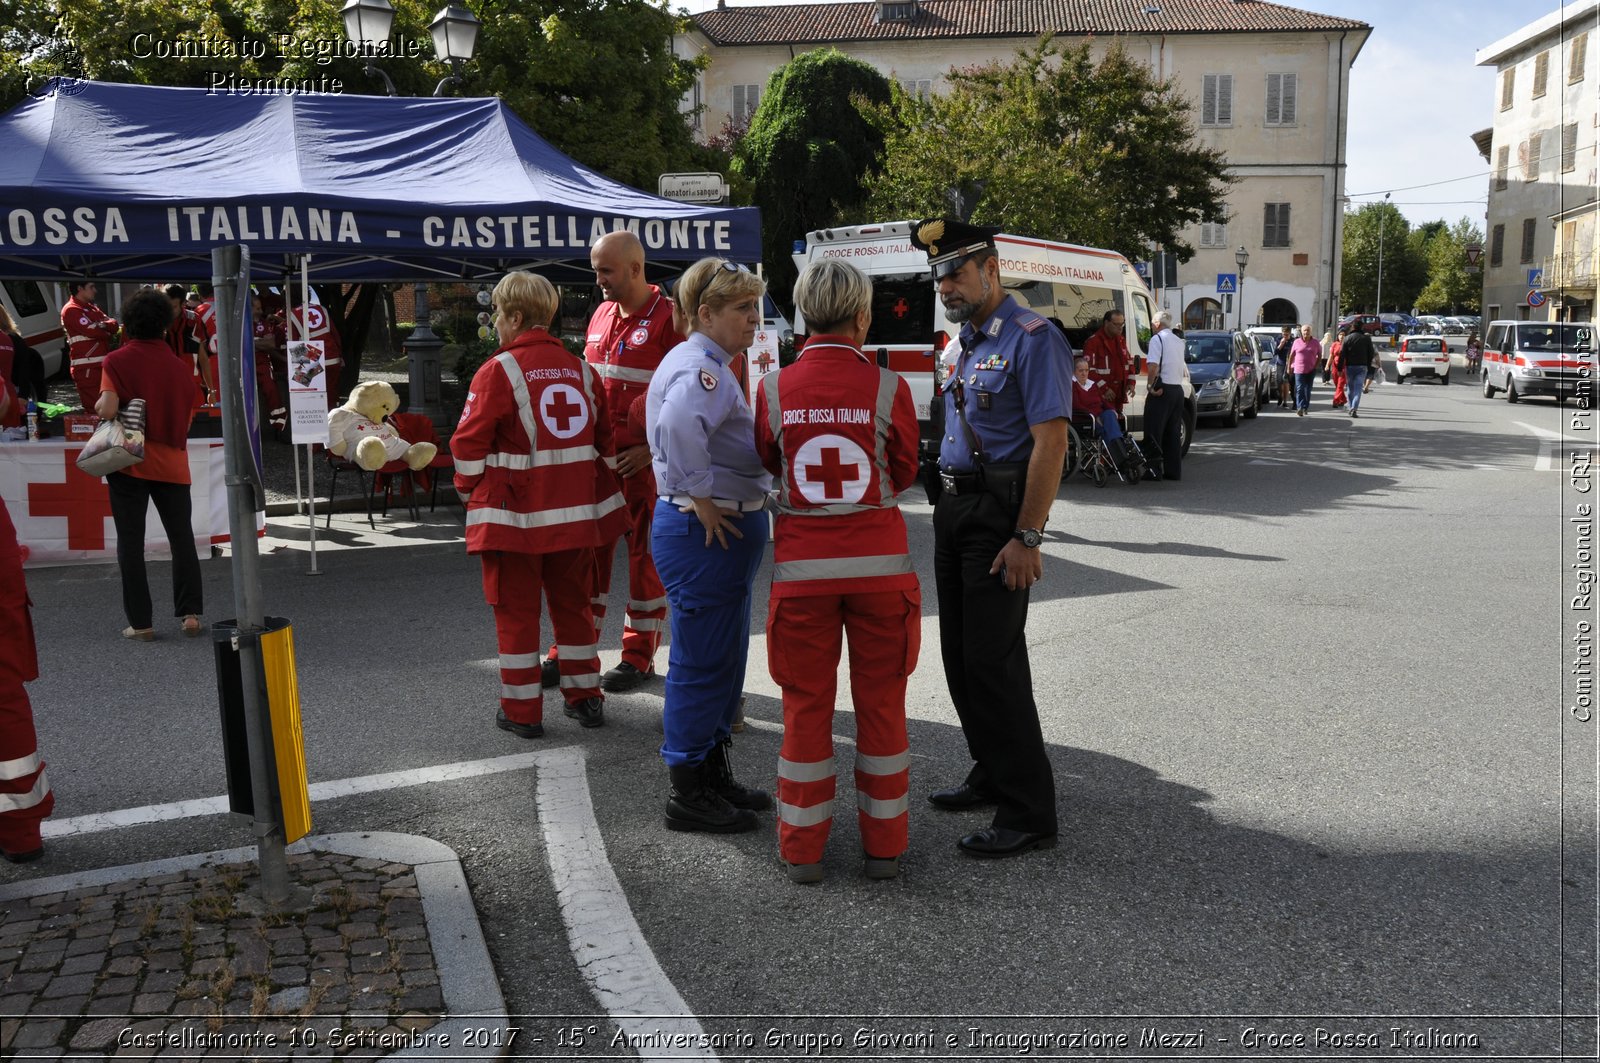 Castellamonte 10 Settembre 2017 - 15 Anniversario Gruppo Giovani e Inaugurazione Mezzi - Croce Rossa Italiana- Comitato Regionale del Piemonte